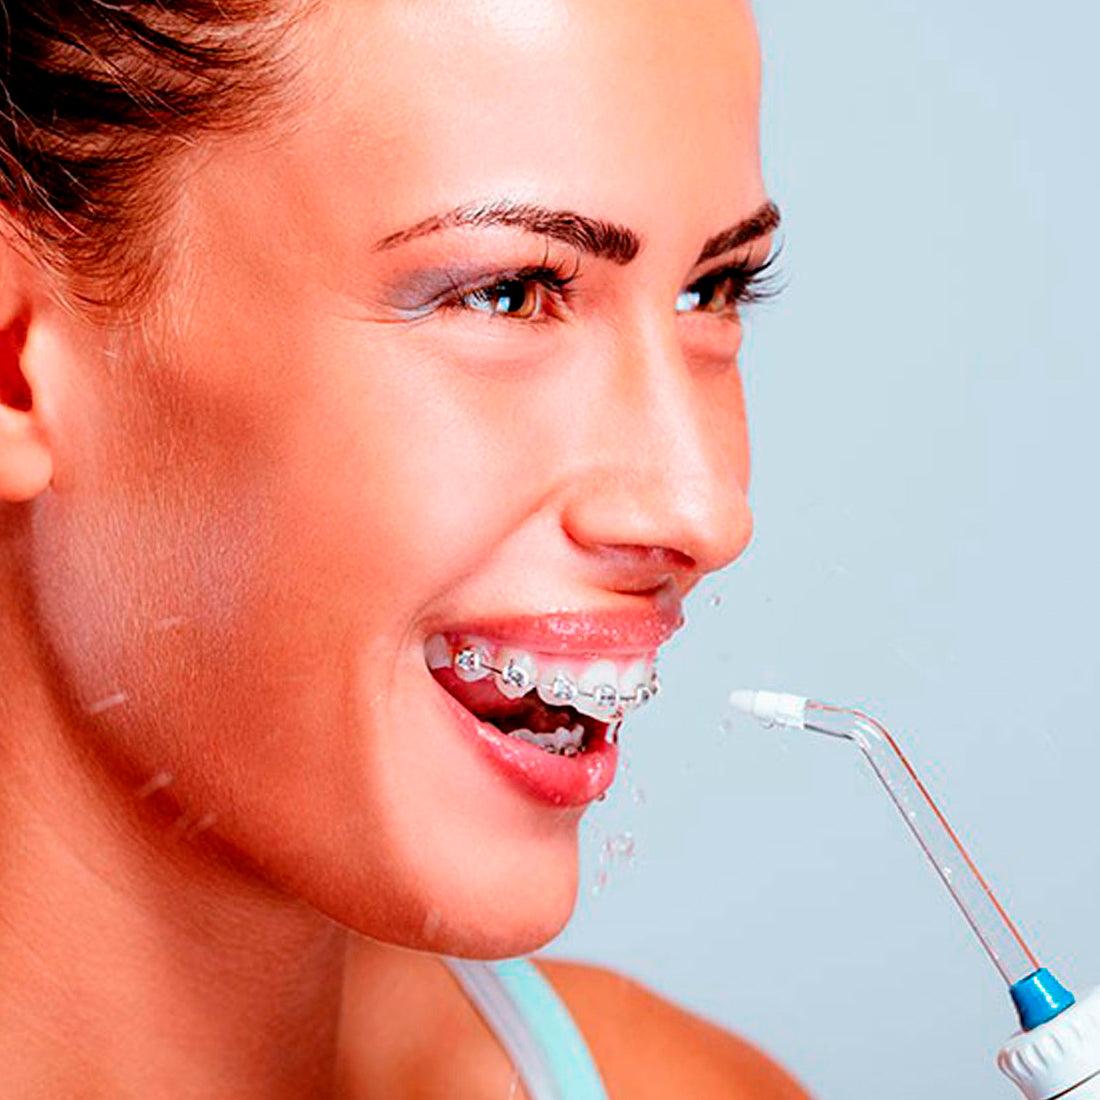 La importancia de los irrigadores en tu higiene bucal - Bostontechstore